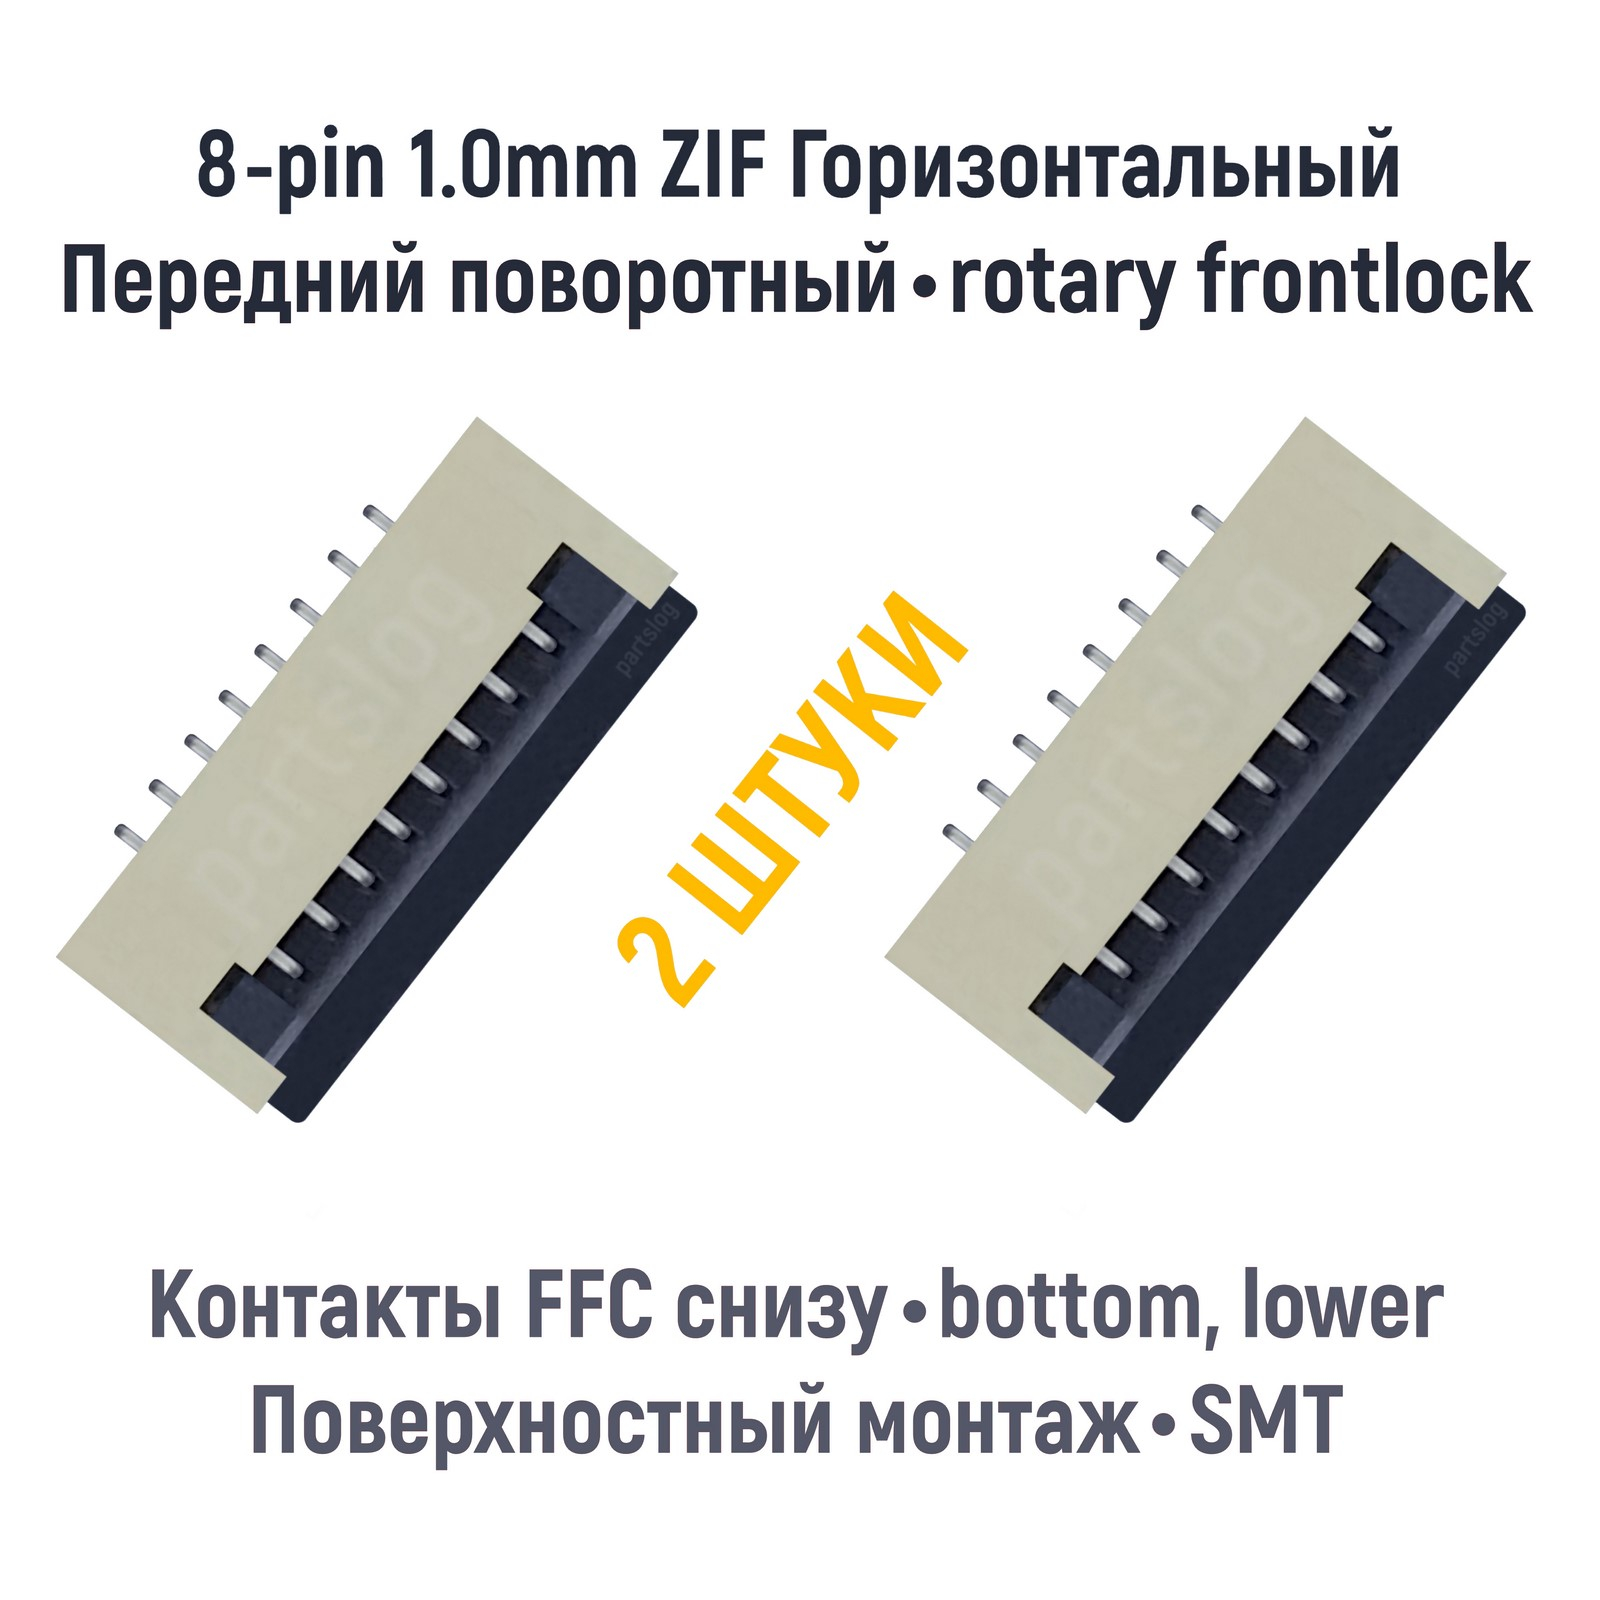 Коннектор OEM для FFC FPC 8-pin шаг 1.0mm ZIF